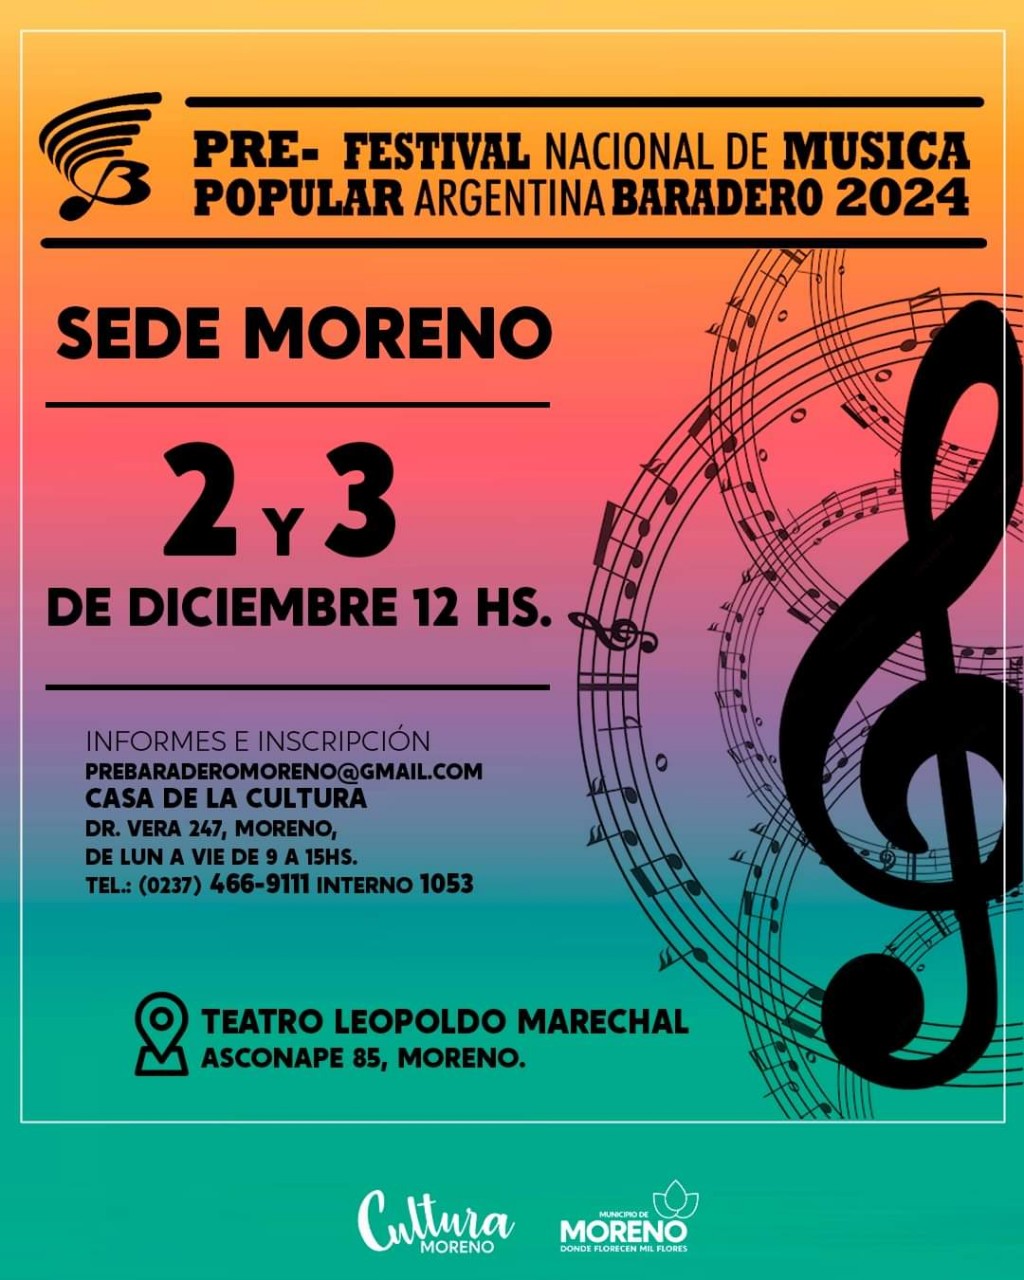 Moreno: Comenzaron las inscripciones al Certamen Nacional de la Música y Danza Pre Baradero